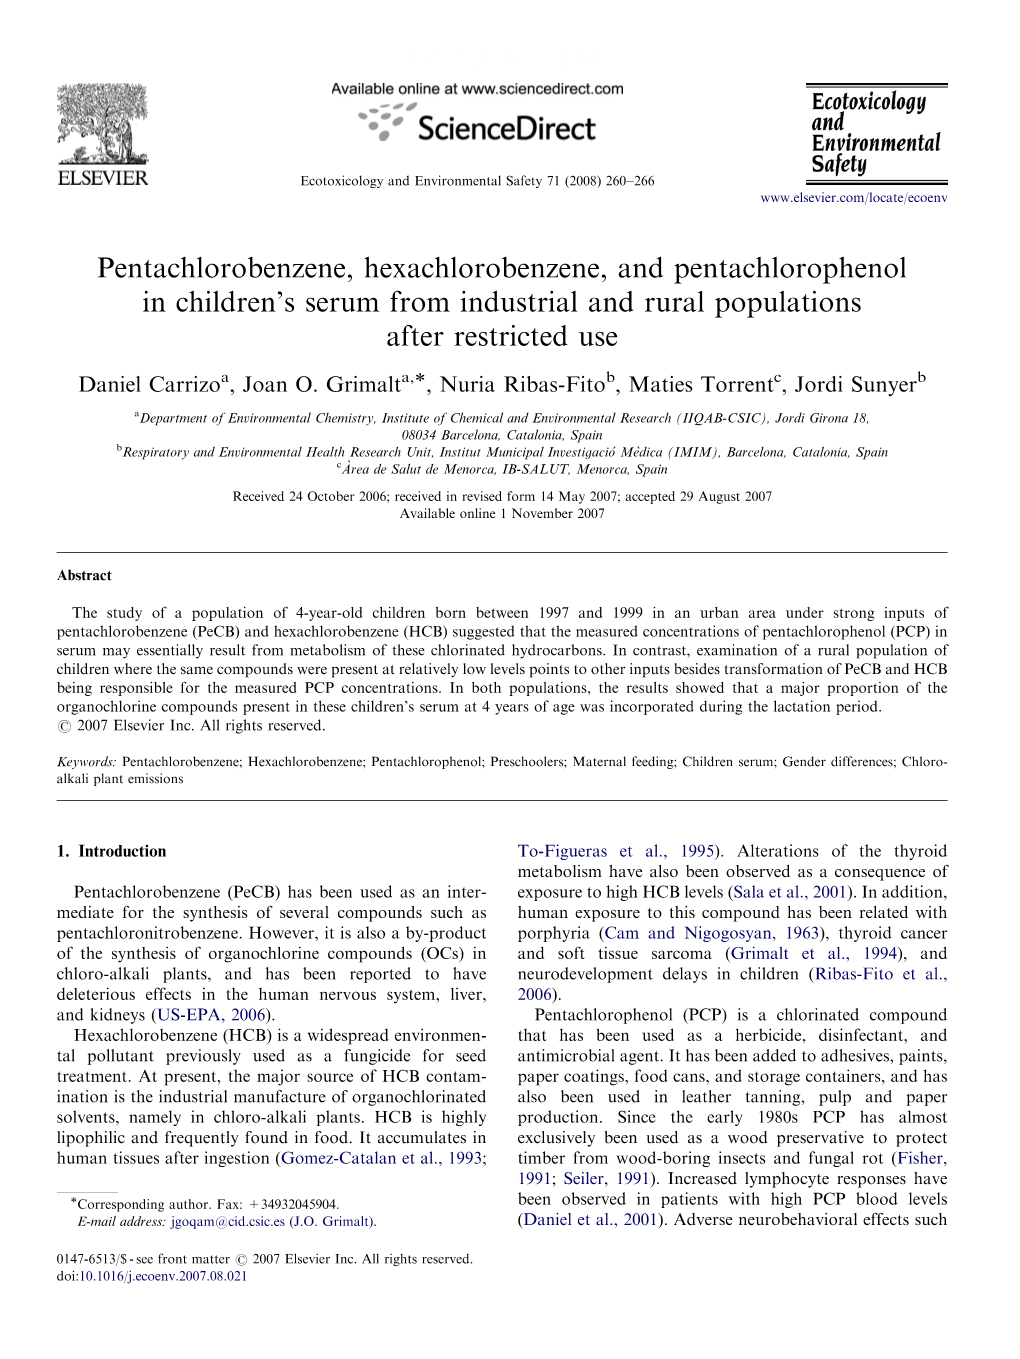 Pentachlorobenzene, Hexachlorobenzene, and Pentachlorophenol in Children's Serum from Industrial and Rural Populations After R